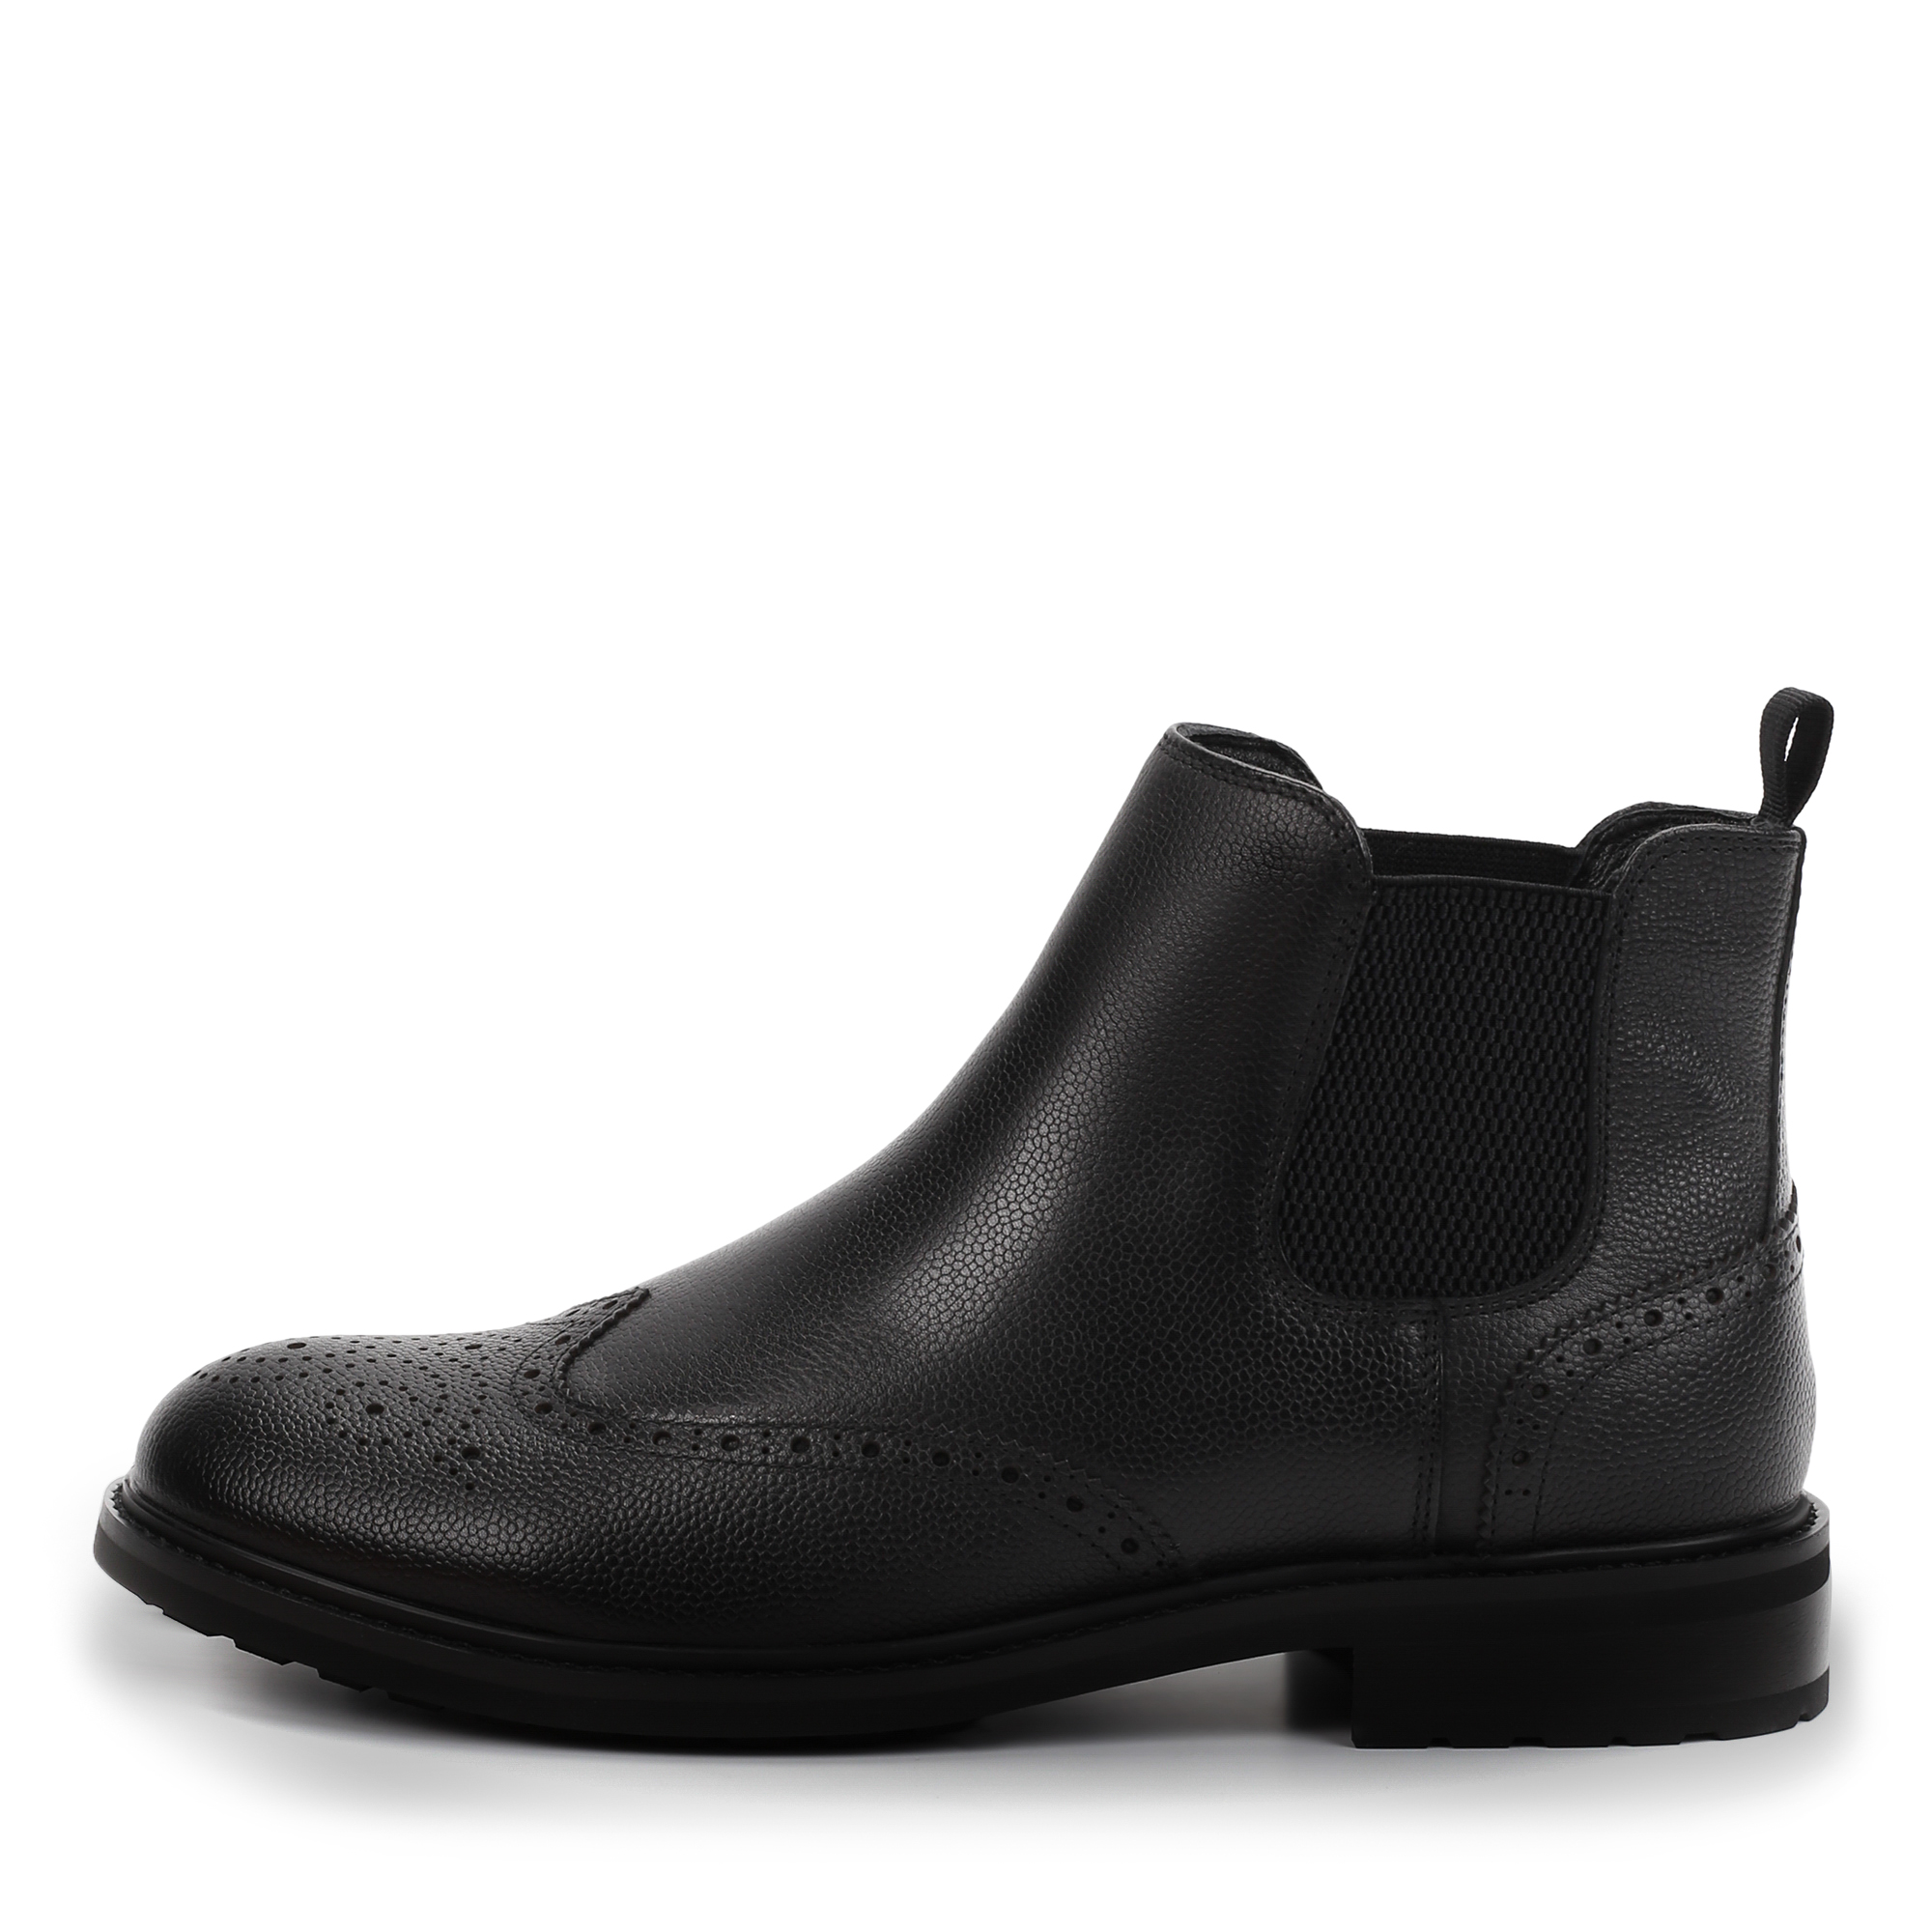 Ботинки Thomas Munz 058-3453A-2102, цвет черный, размер 43